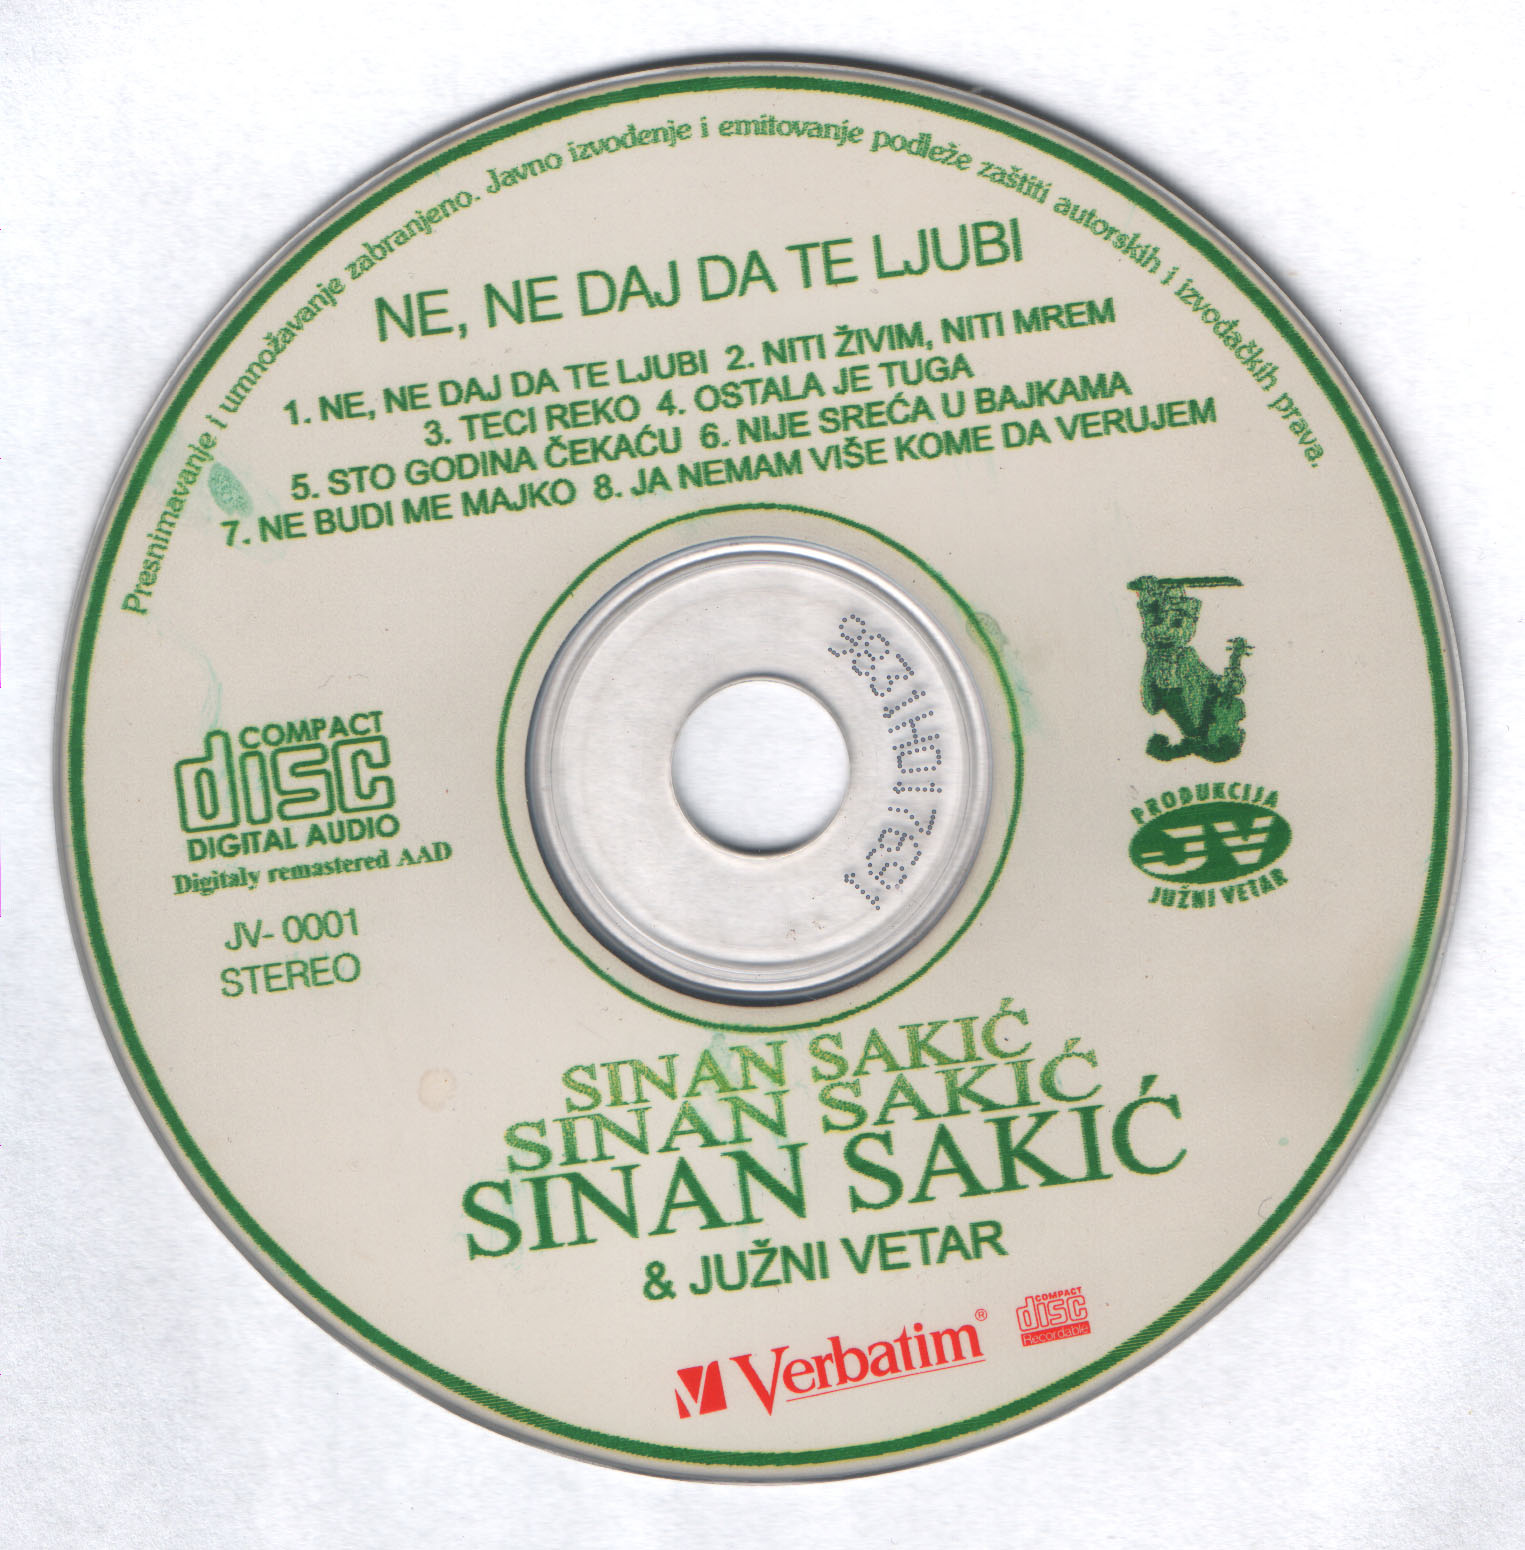 Sinan Sakic 2000 Cd